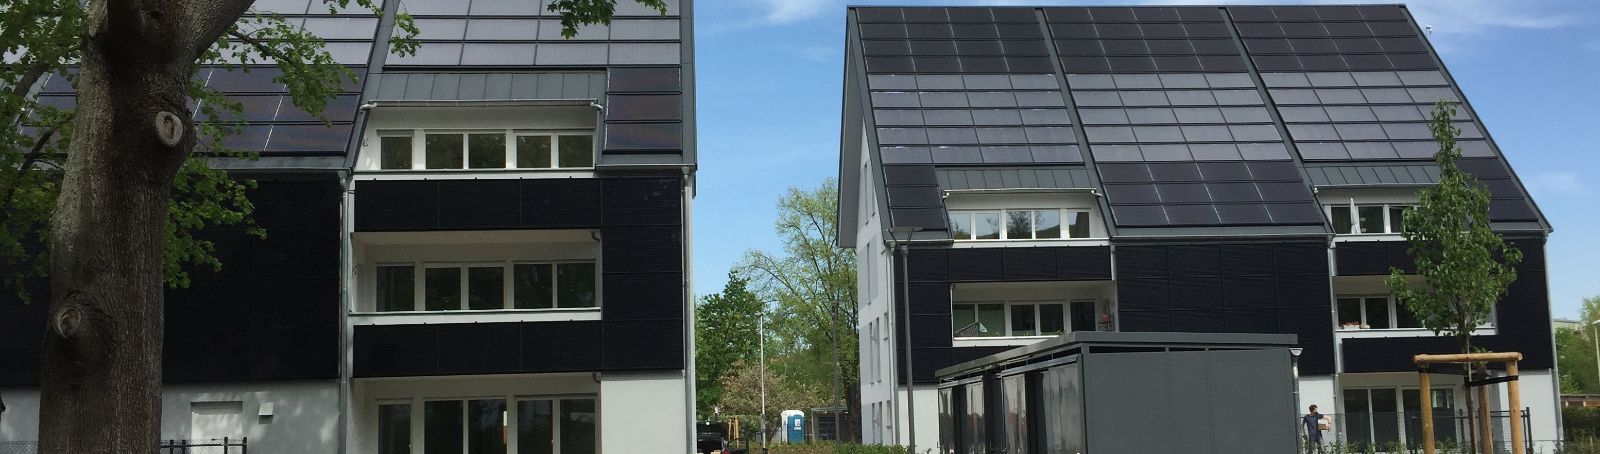 Diese zwei solaren, teilautarken Mehrfamilienhäuser in Cottbus untersucht ein Team der TU Bergakademie Freiberg im Projekt Eversol.